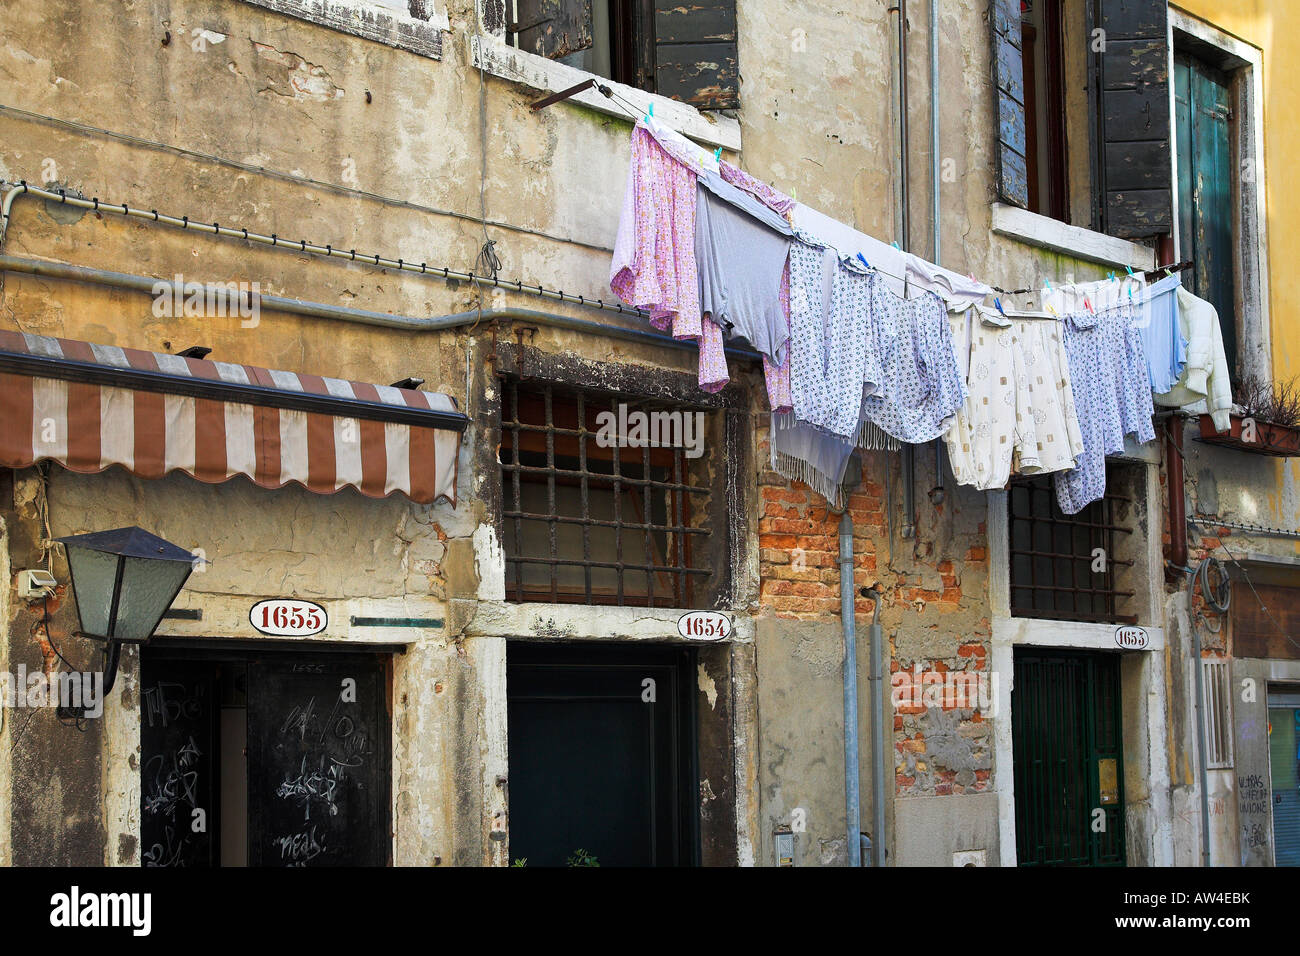 Essiccazione di abbigliamento sulla linea, Venezia, Italia Foto Stock